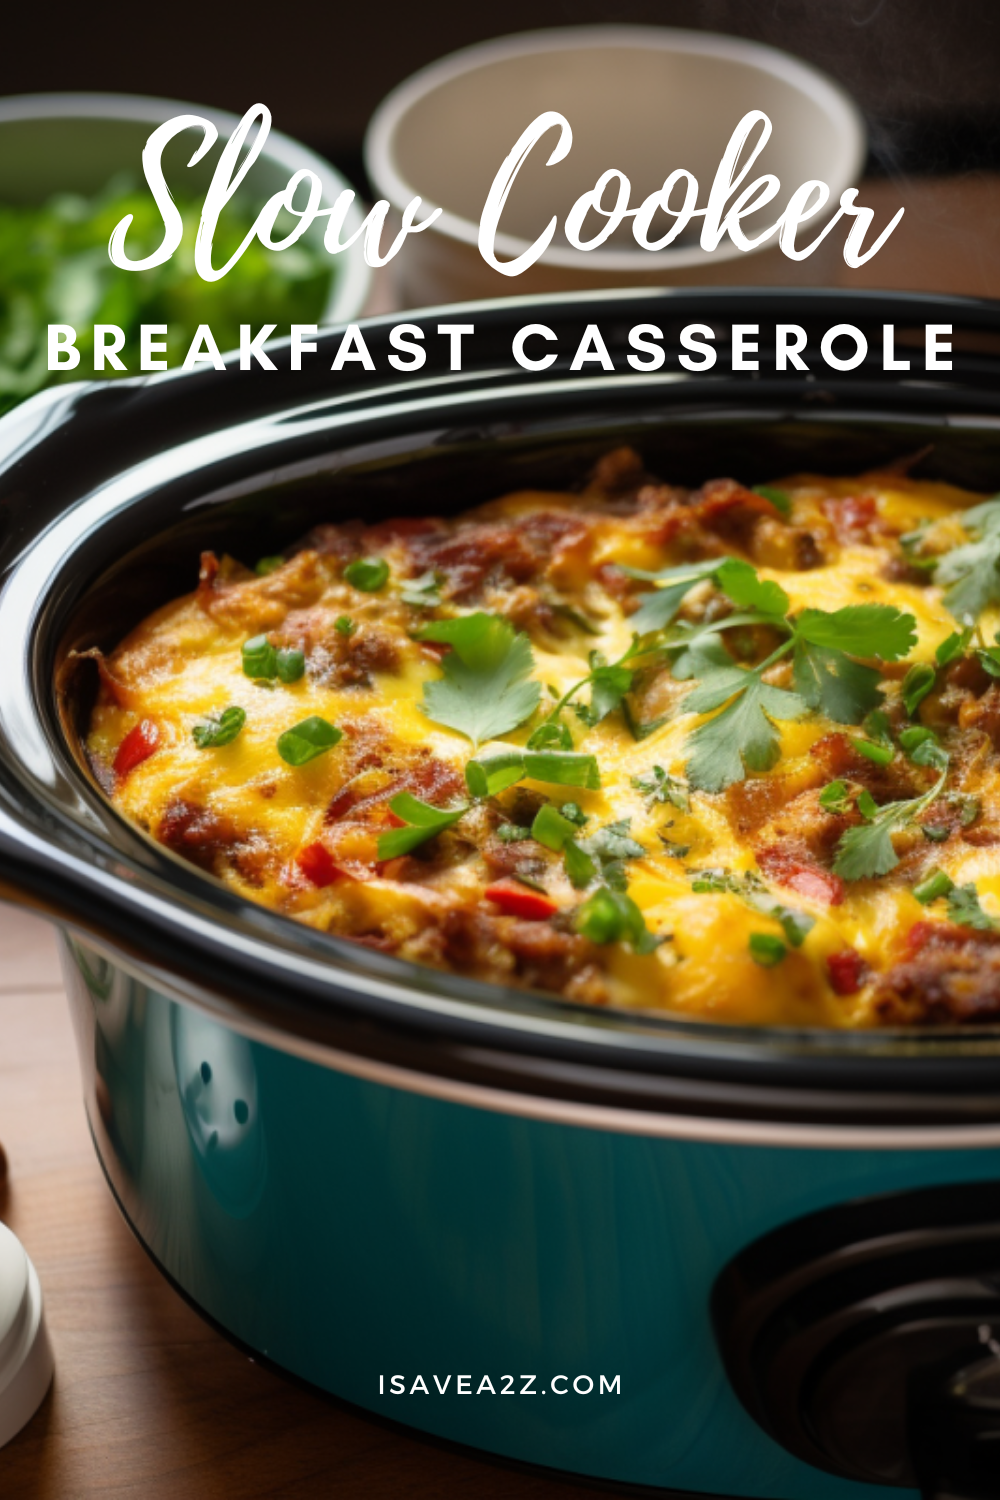 Crockpot Breakfast Casserole